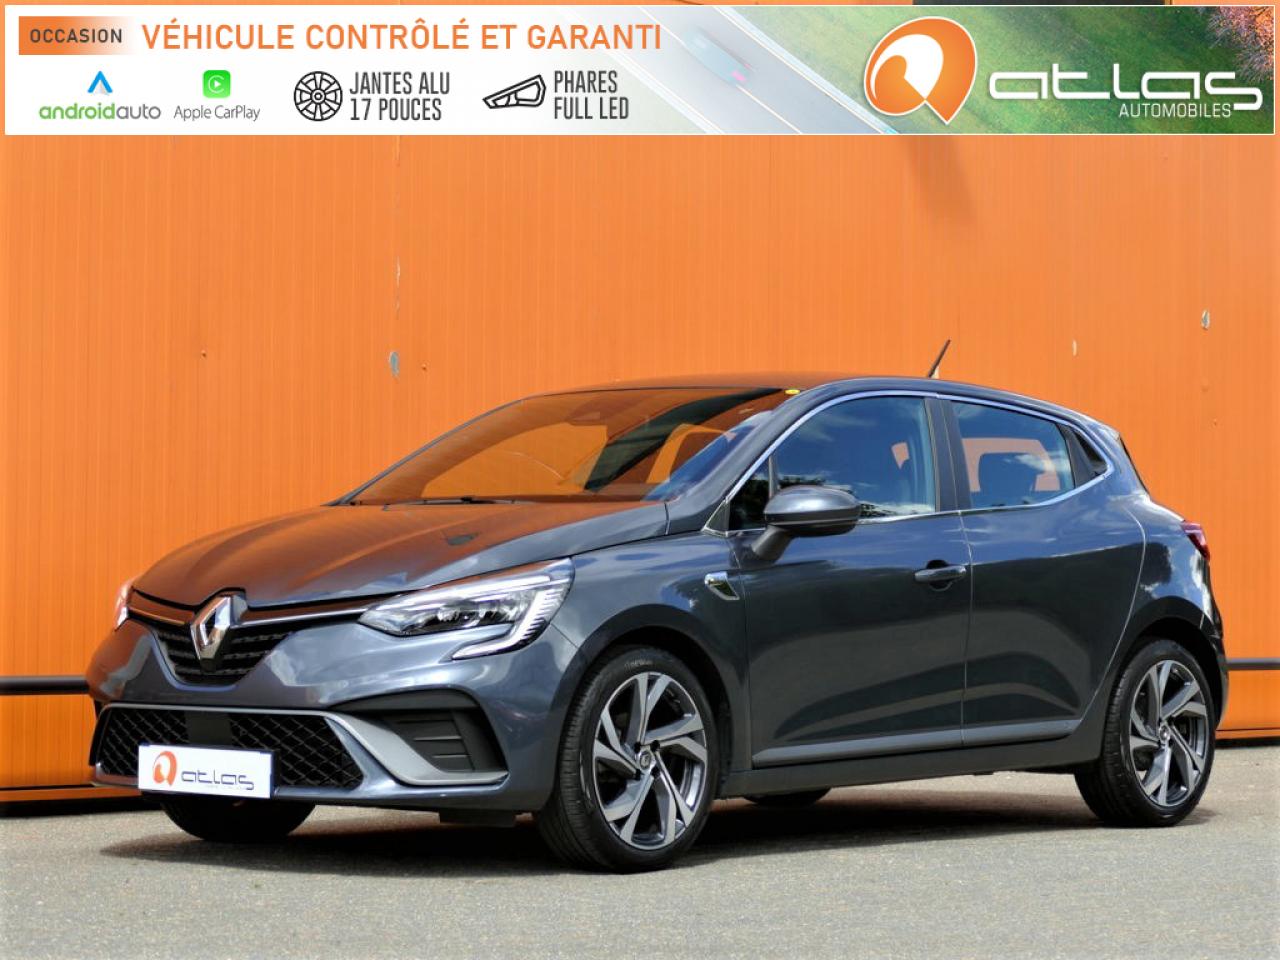 2021 Renault CLIO